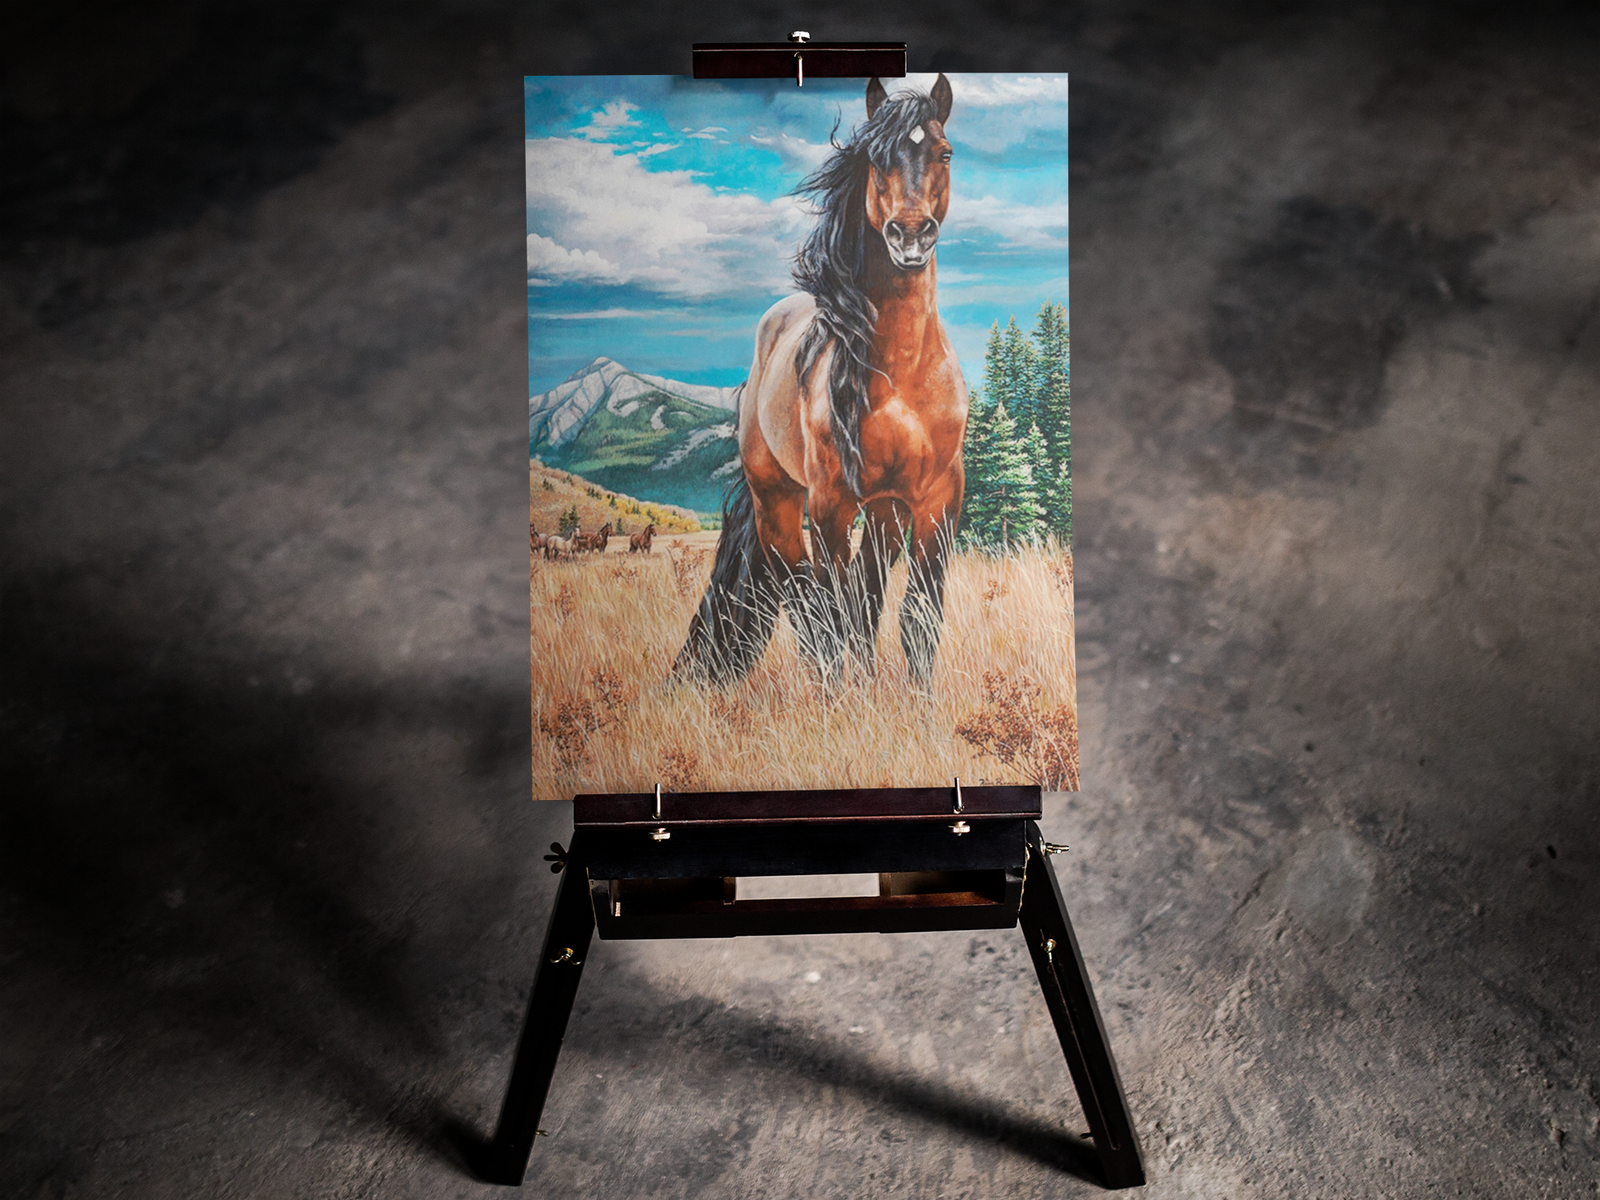 Majestic Horse in a Field 5D Diamond Art